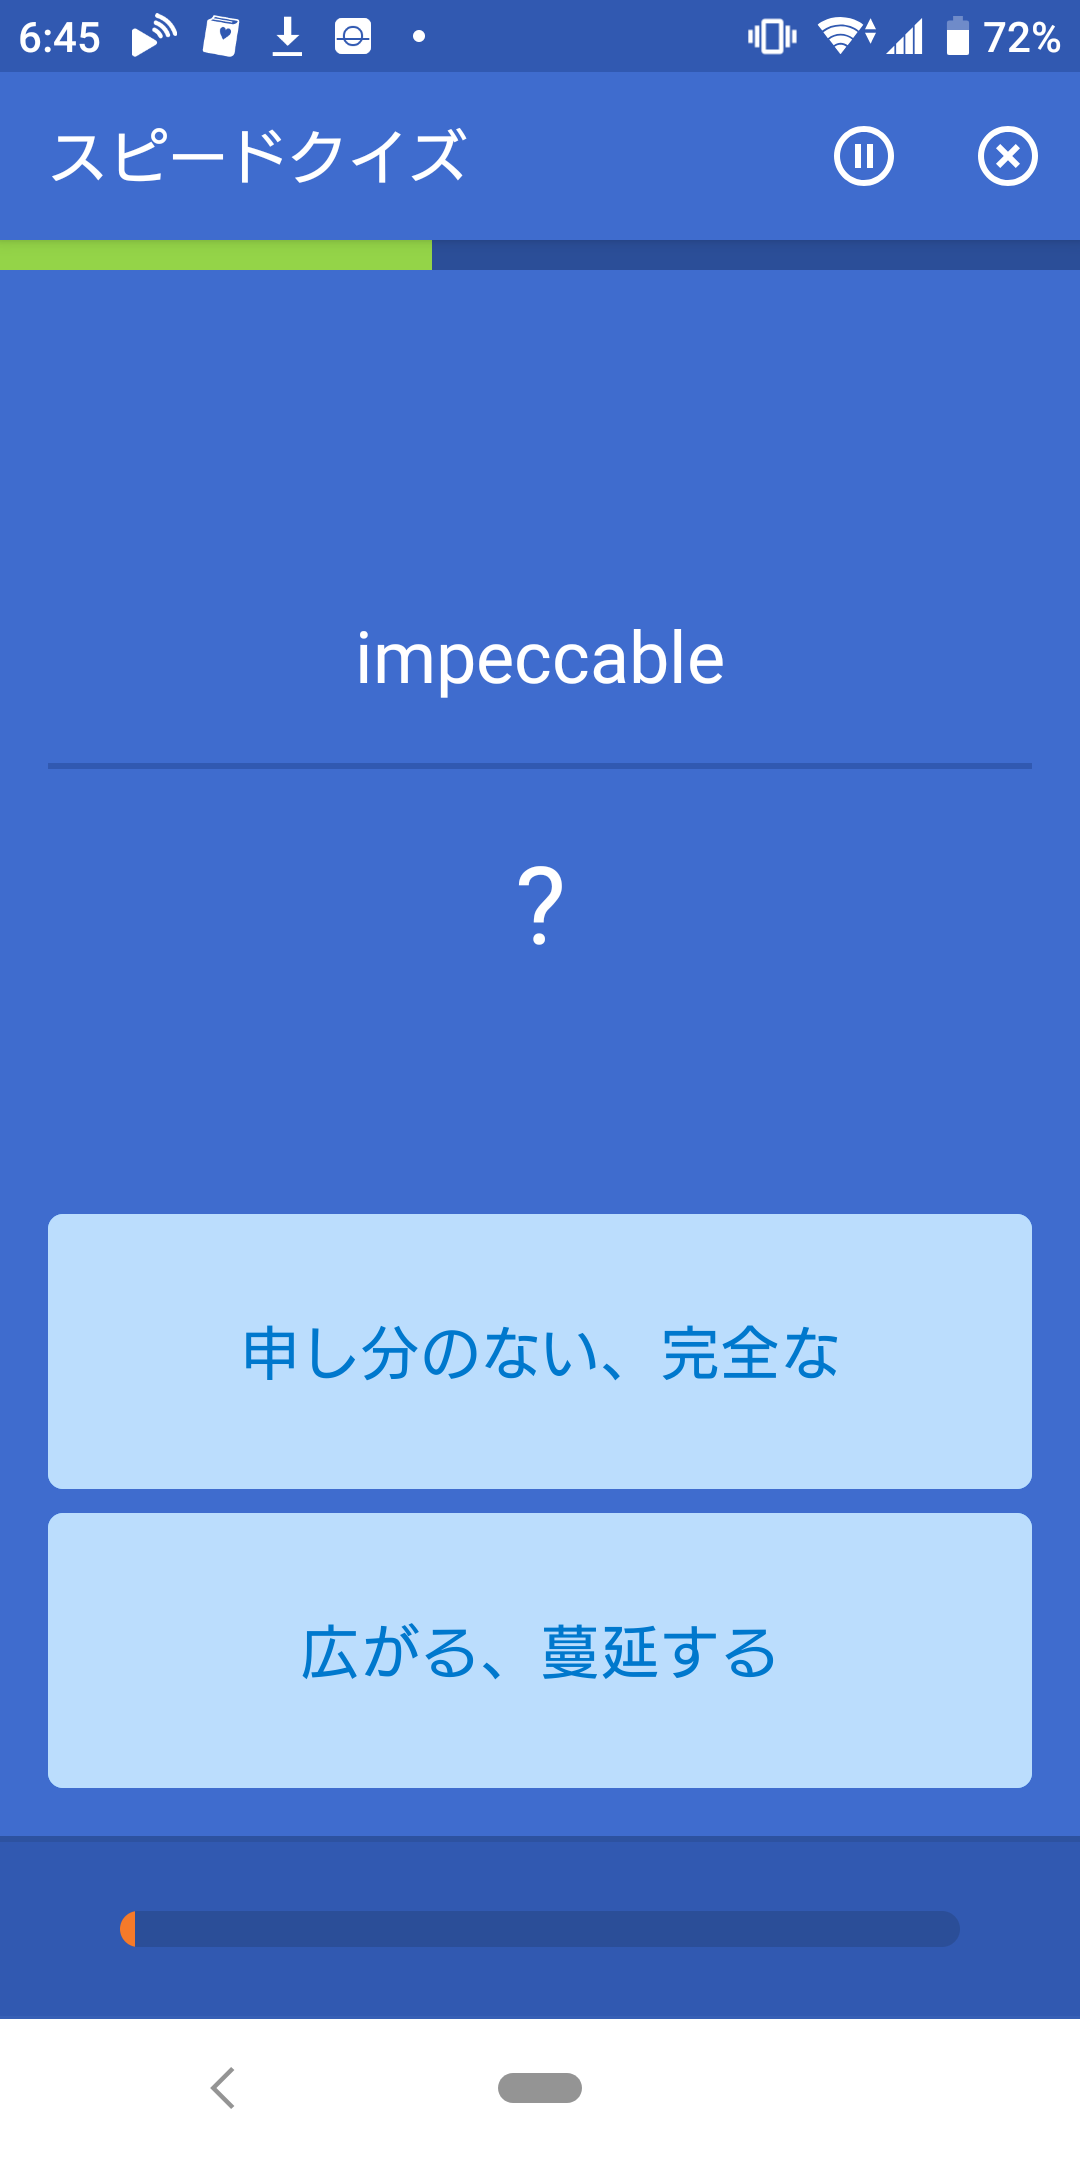 [用例あり]”impeccable”の意味定着/英検1級英単語 出る度A